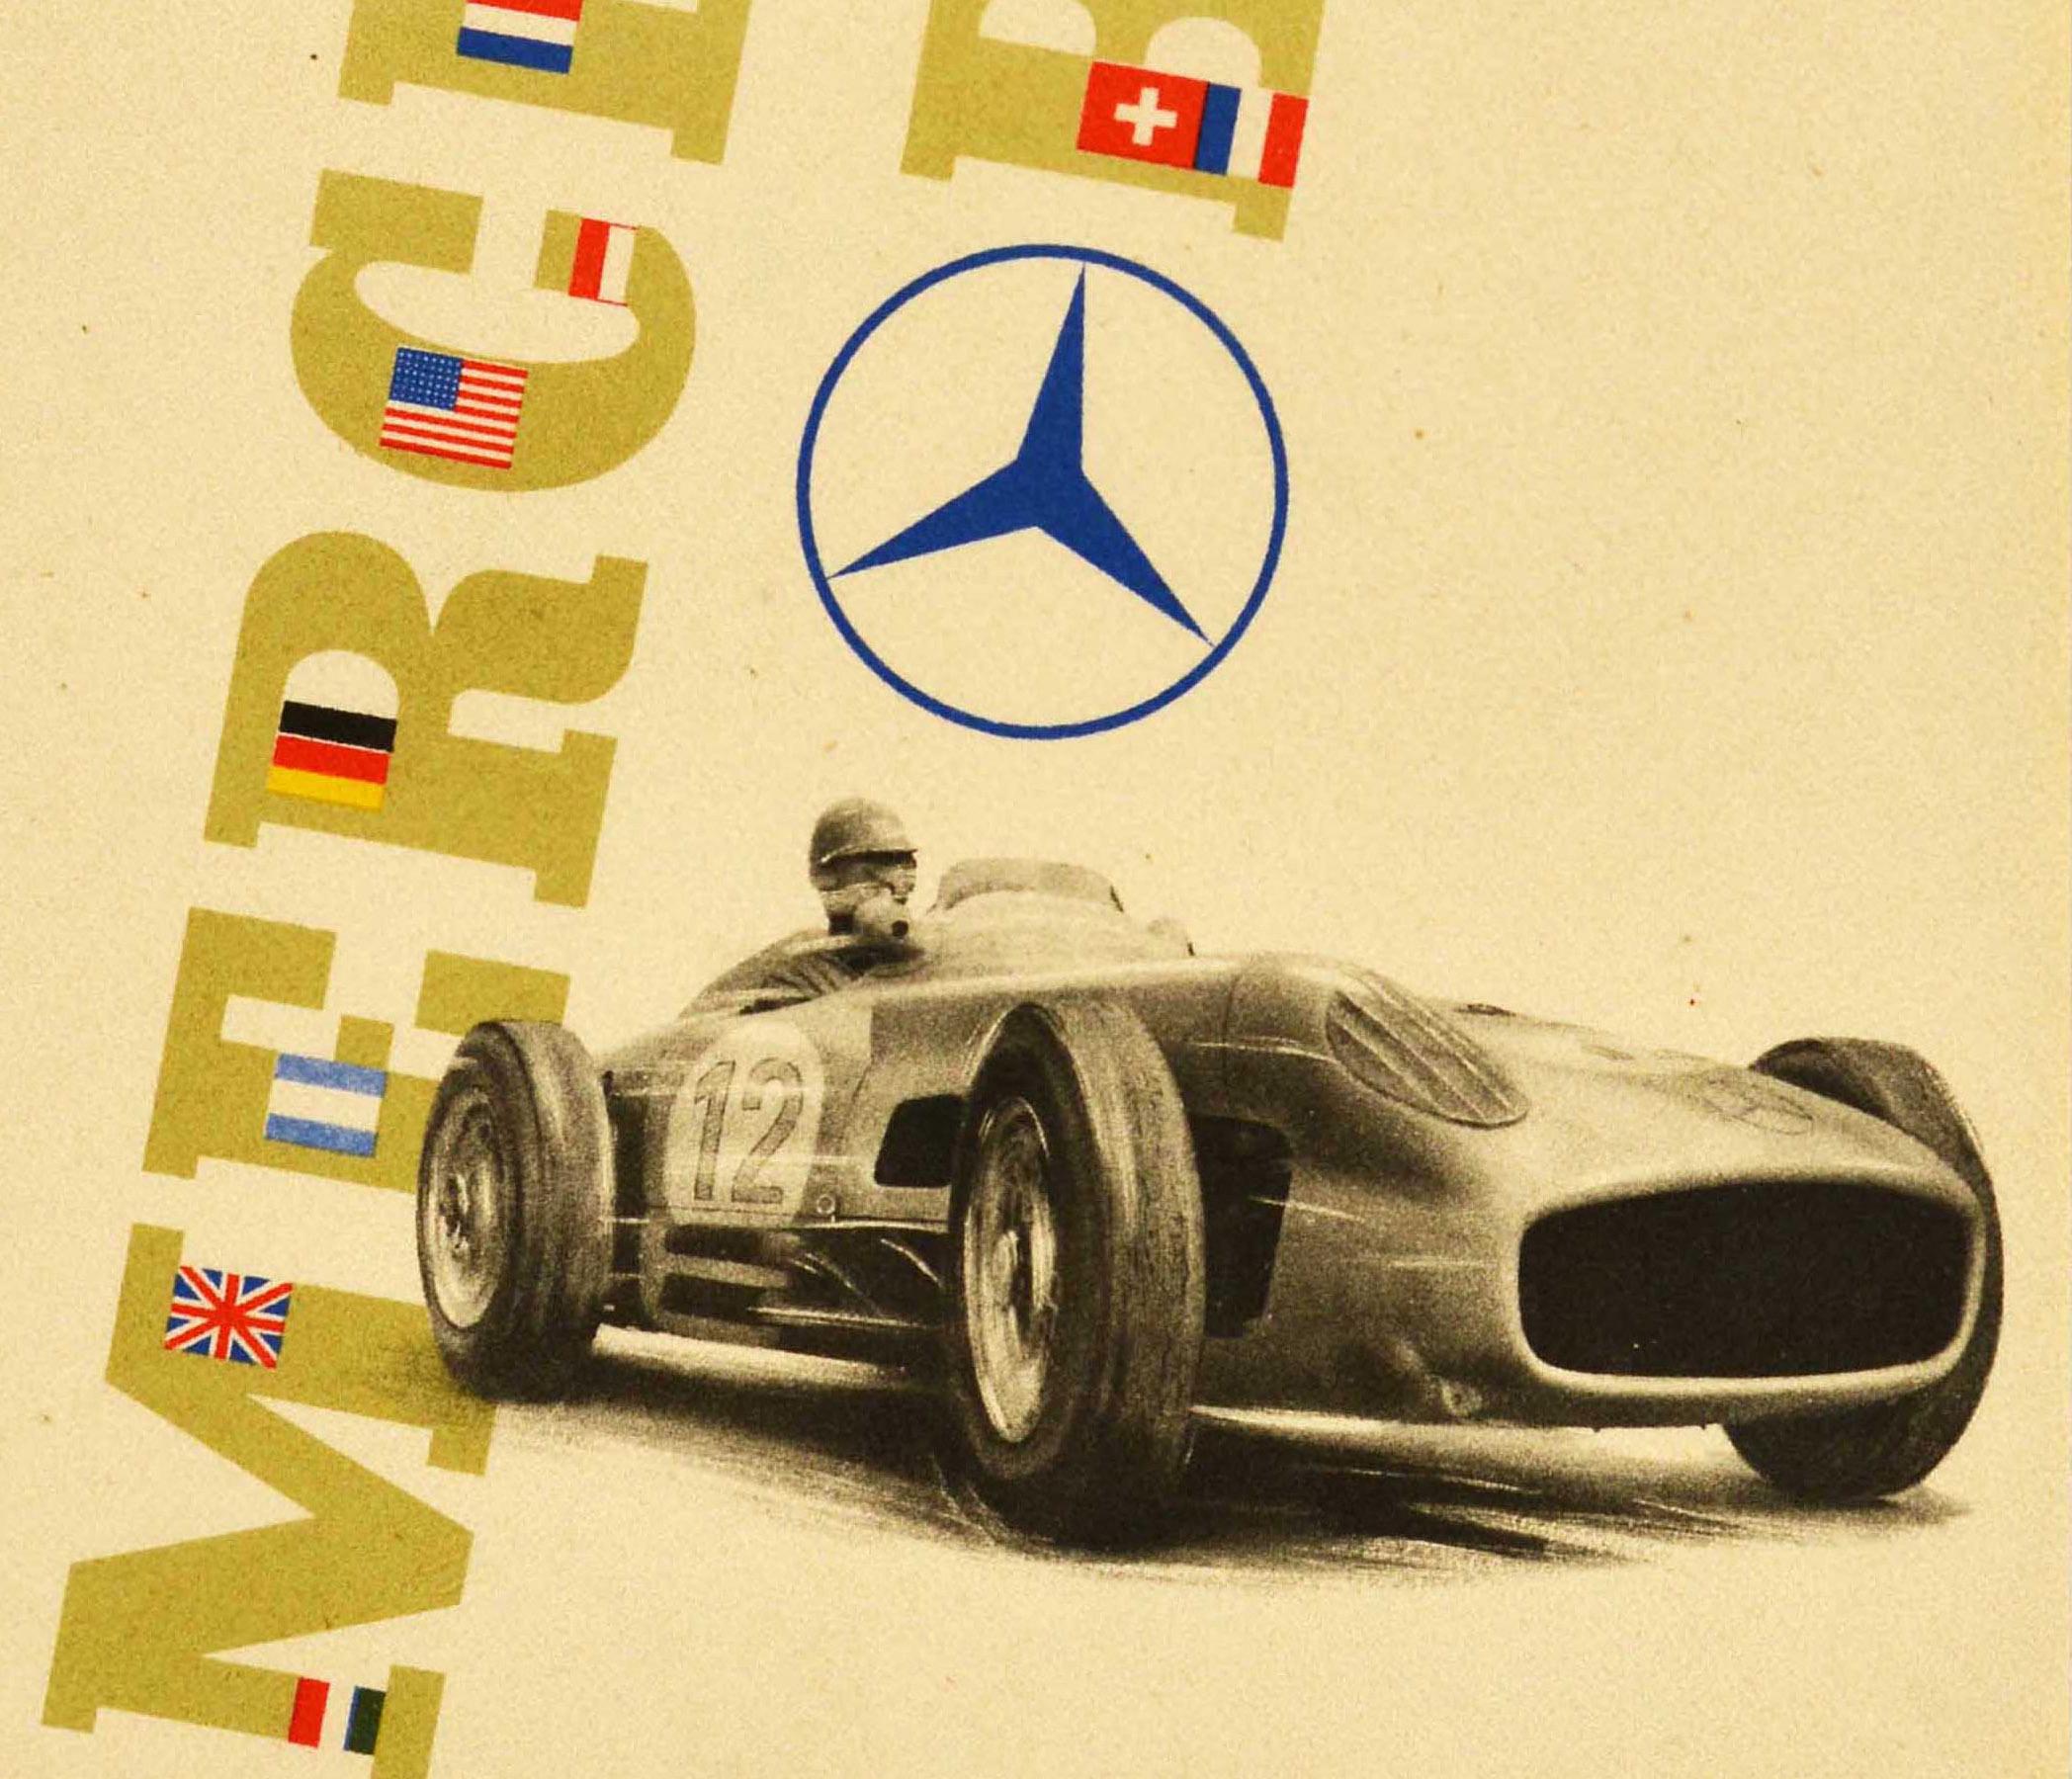 Original vintage poster advertising the Mercedes Benz fourfold victory at the England Grand Prix in 1955 - Vierfacher Mercedes-Benz-Sieg im Grossen Preis von England 1955 1. Stirling Moss 2. Weltmeister / World Champion Juan Manuel Fangio 3. Karl